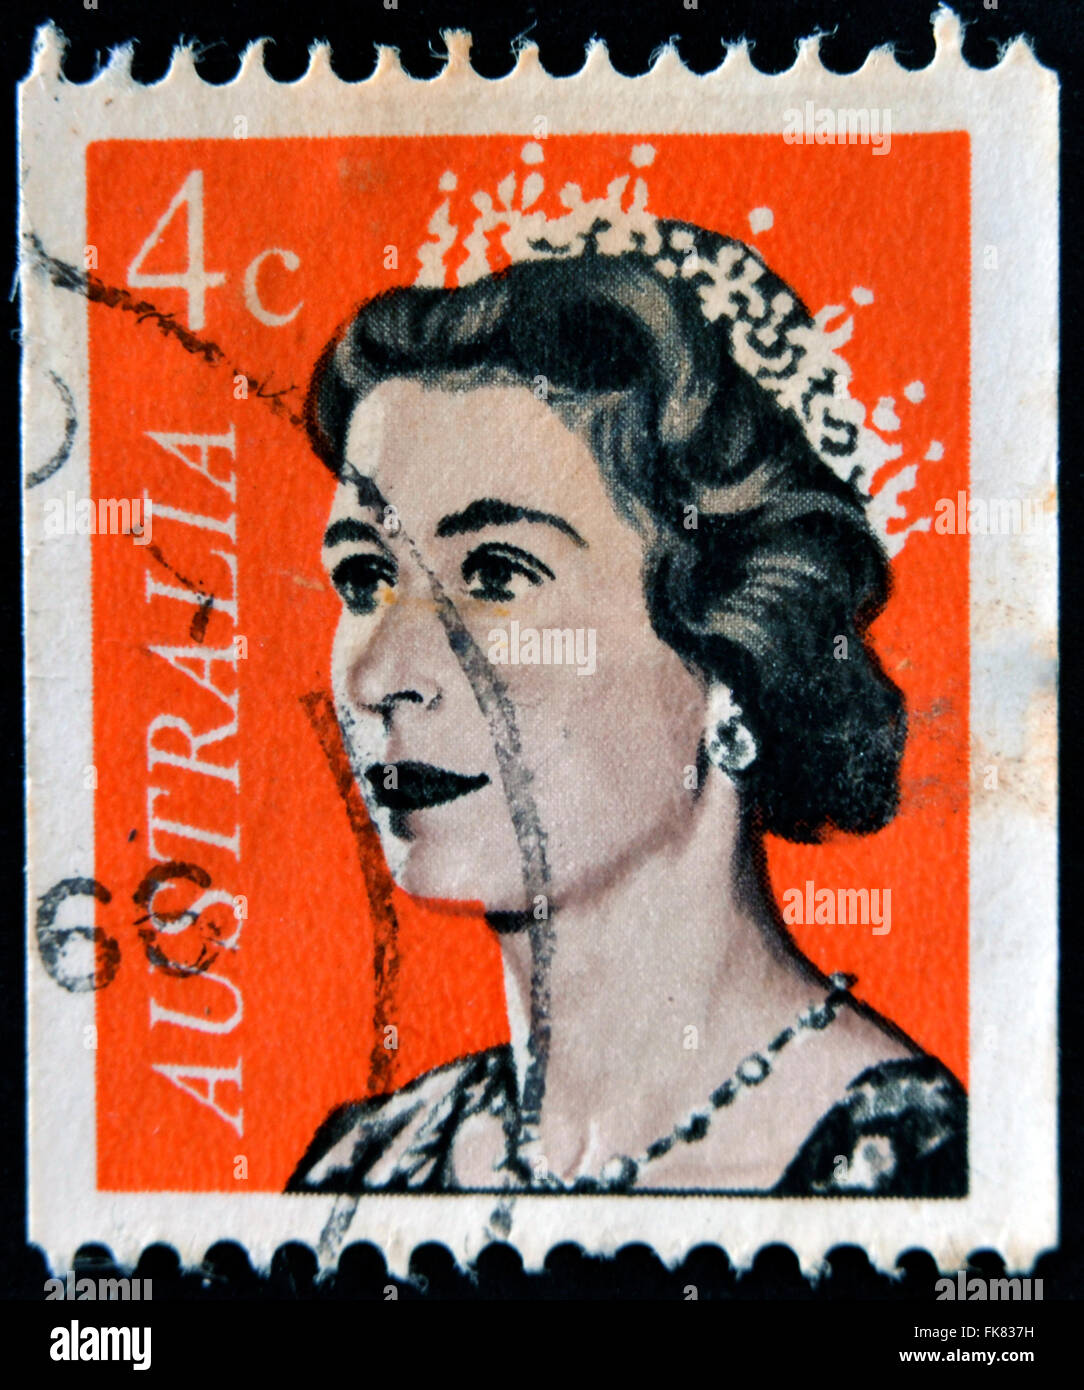 Australie - VERS 1966 : timbre imprimé dans l'Australie présente le portrait de la reine Elizabeth II, vers 1966 Banque D'Images